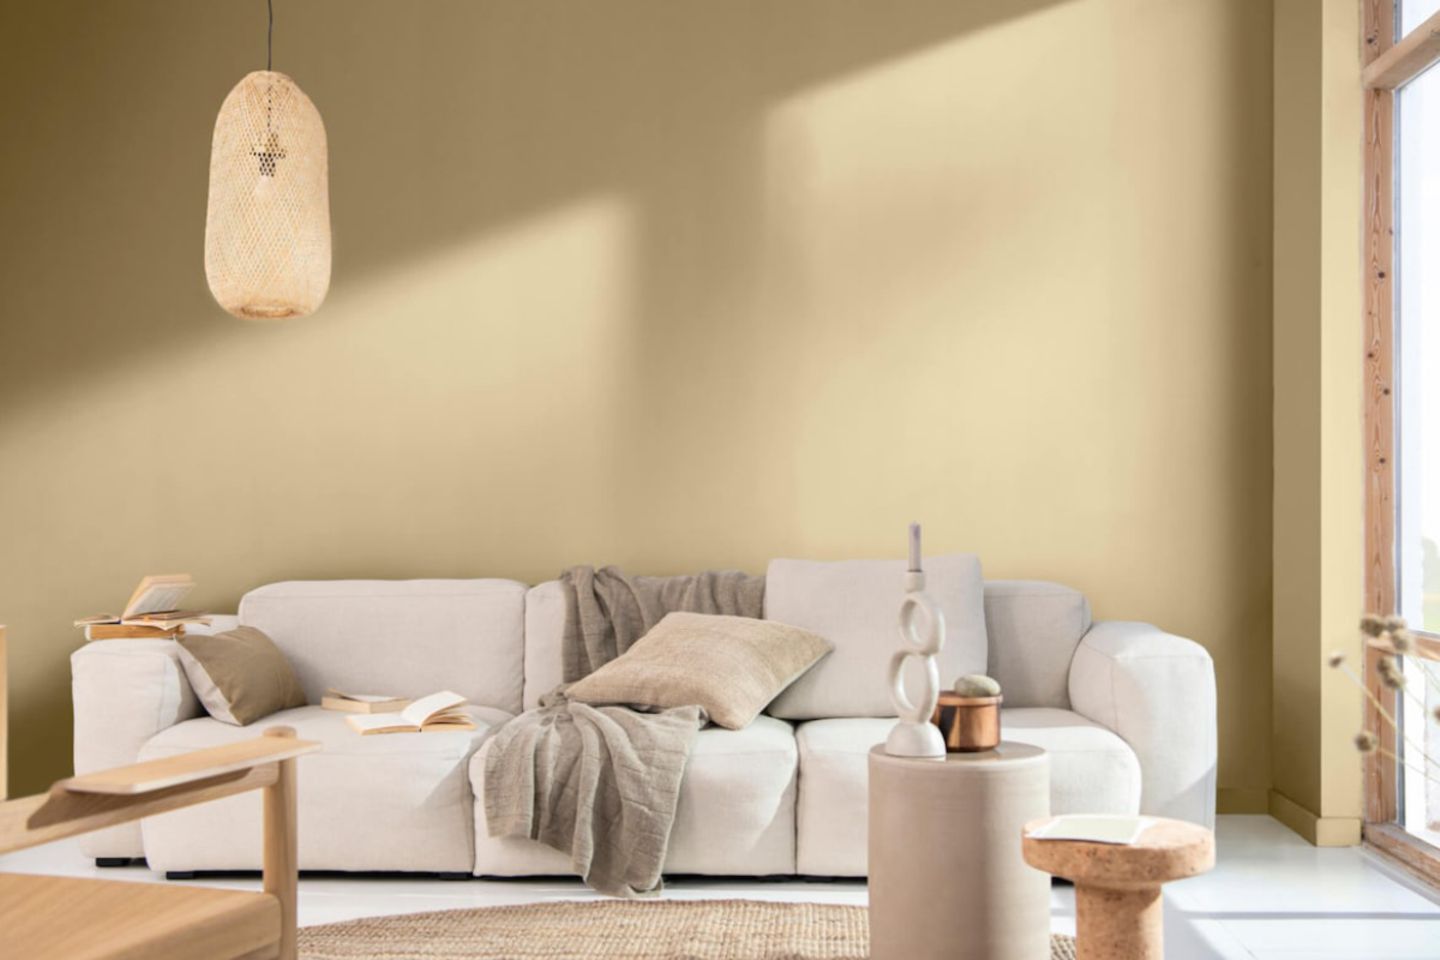 Wohnzimmer mit lehmfarbener Wand und weichem Sofa in Beige